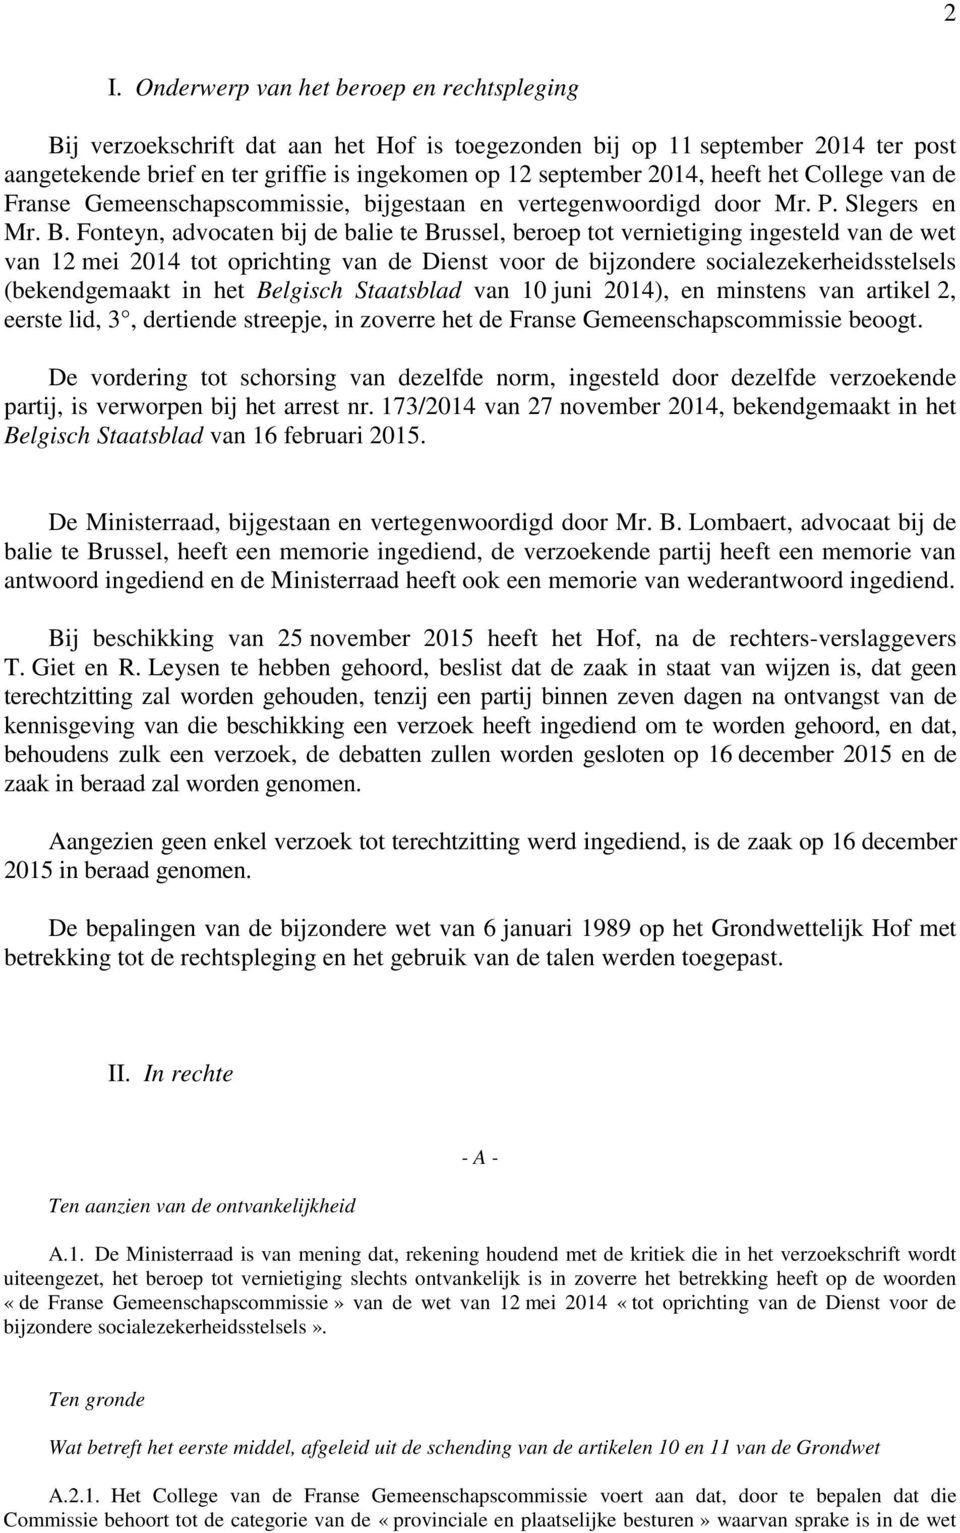 Fonteyn, advocaten bij de balie te Brussel, beroep tot vernietiging ingesteld van de wet van 12 mei 2014 tot oprichting van de Dienst voor de bijzondere socialezekerheidsstelsels (bekendgemaakt in